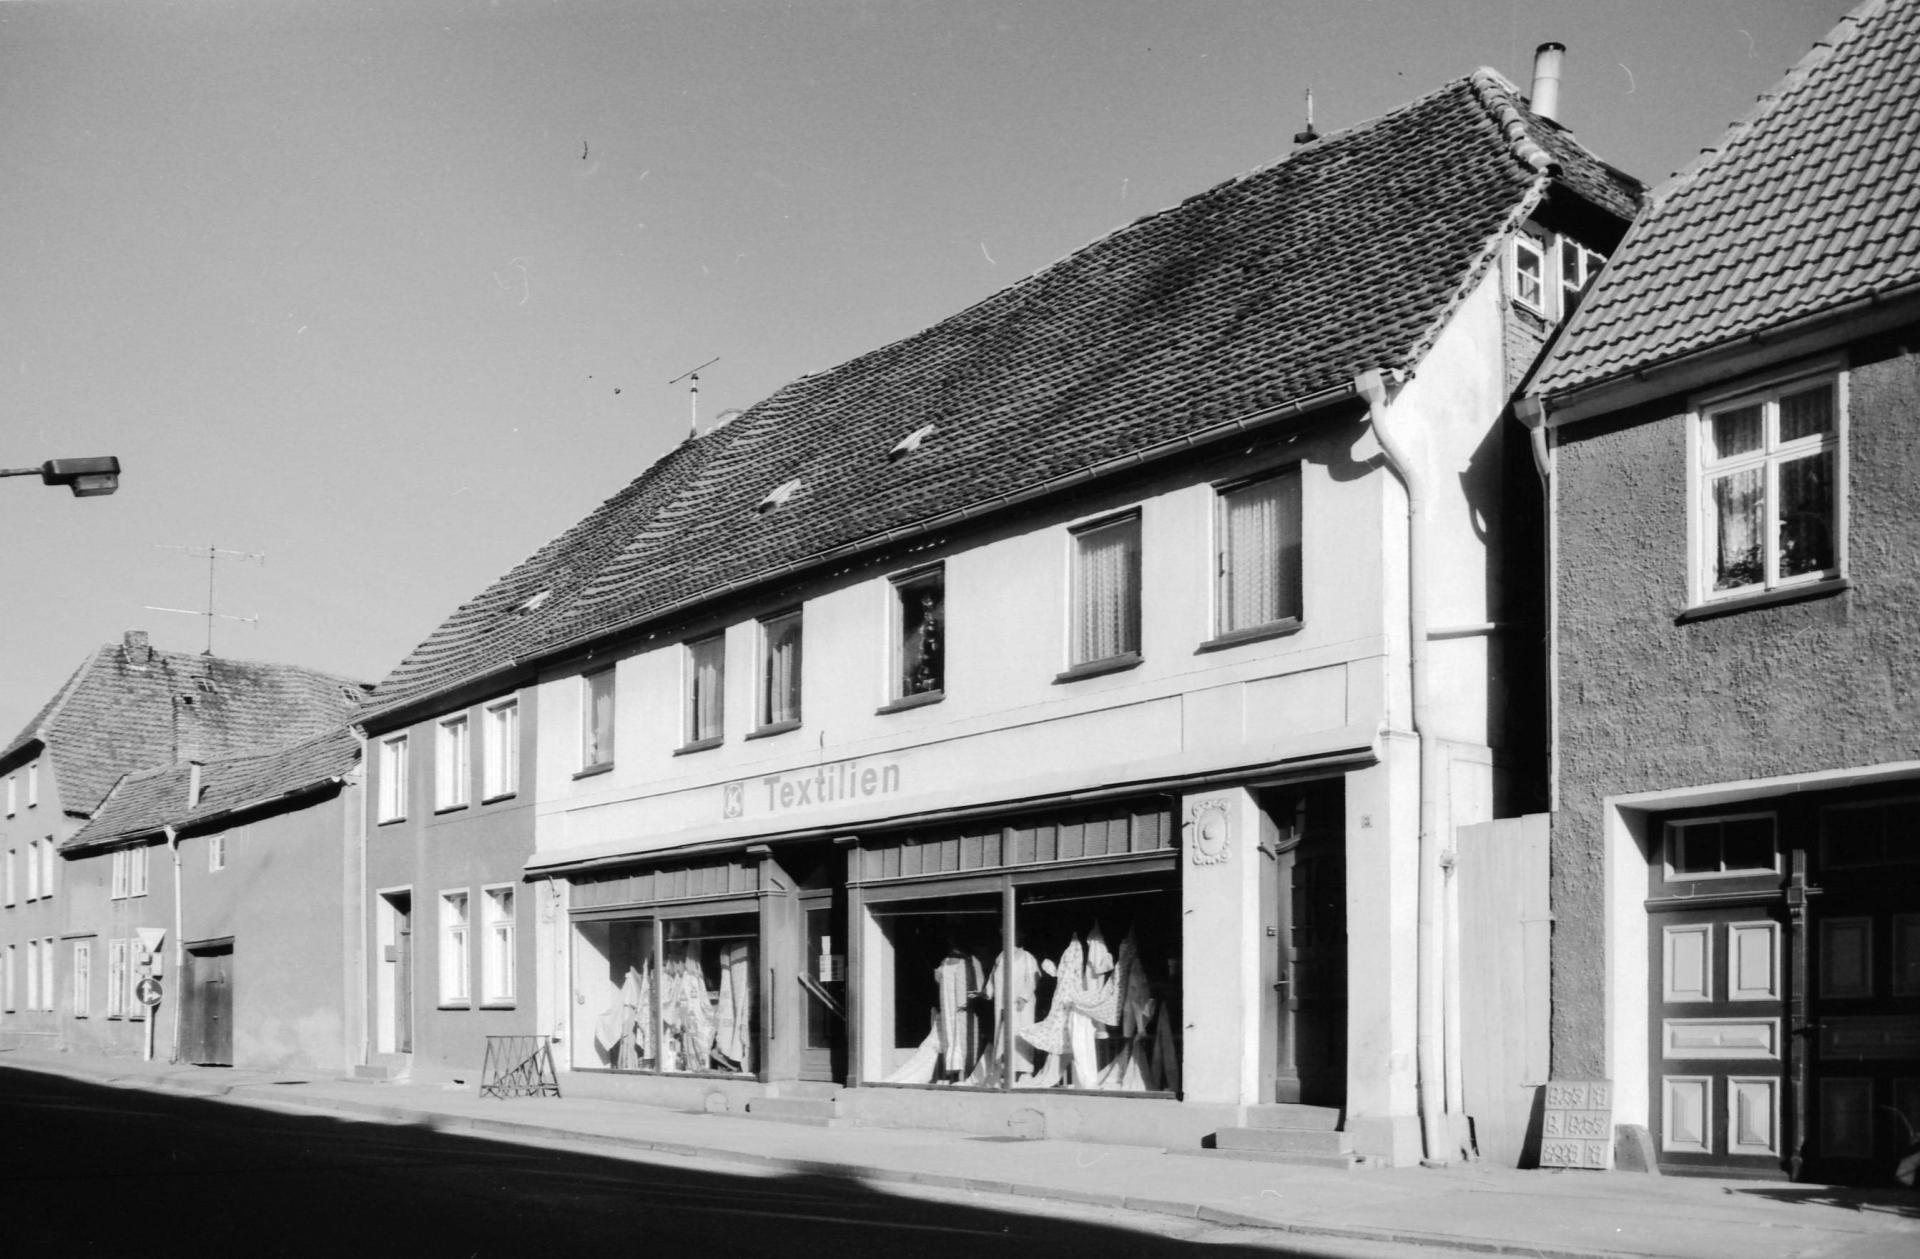 Str. d. Friedens 3 (Textilkonsum, 1990).